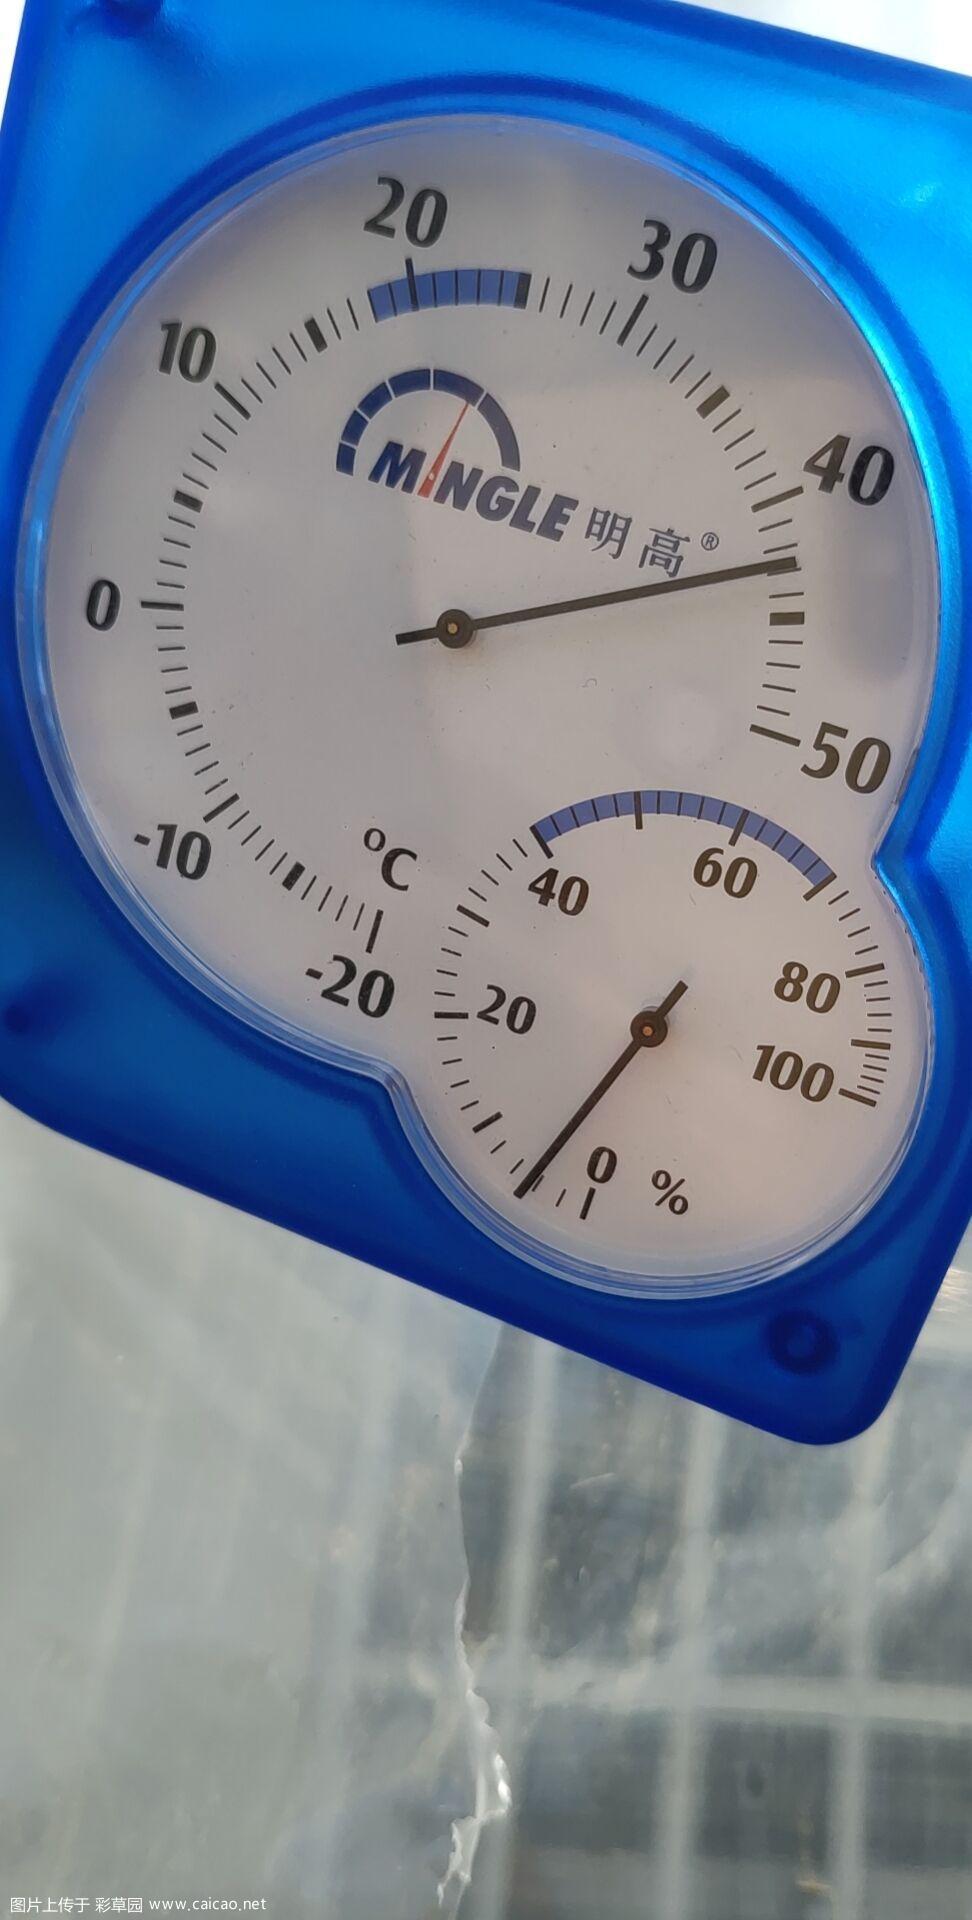 43°C